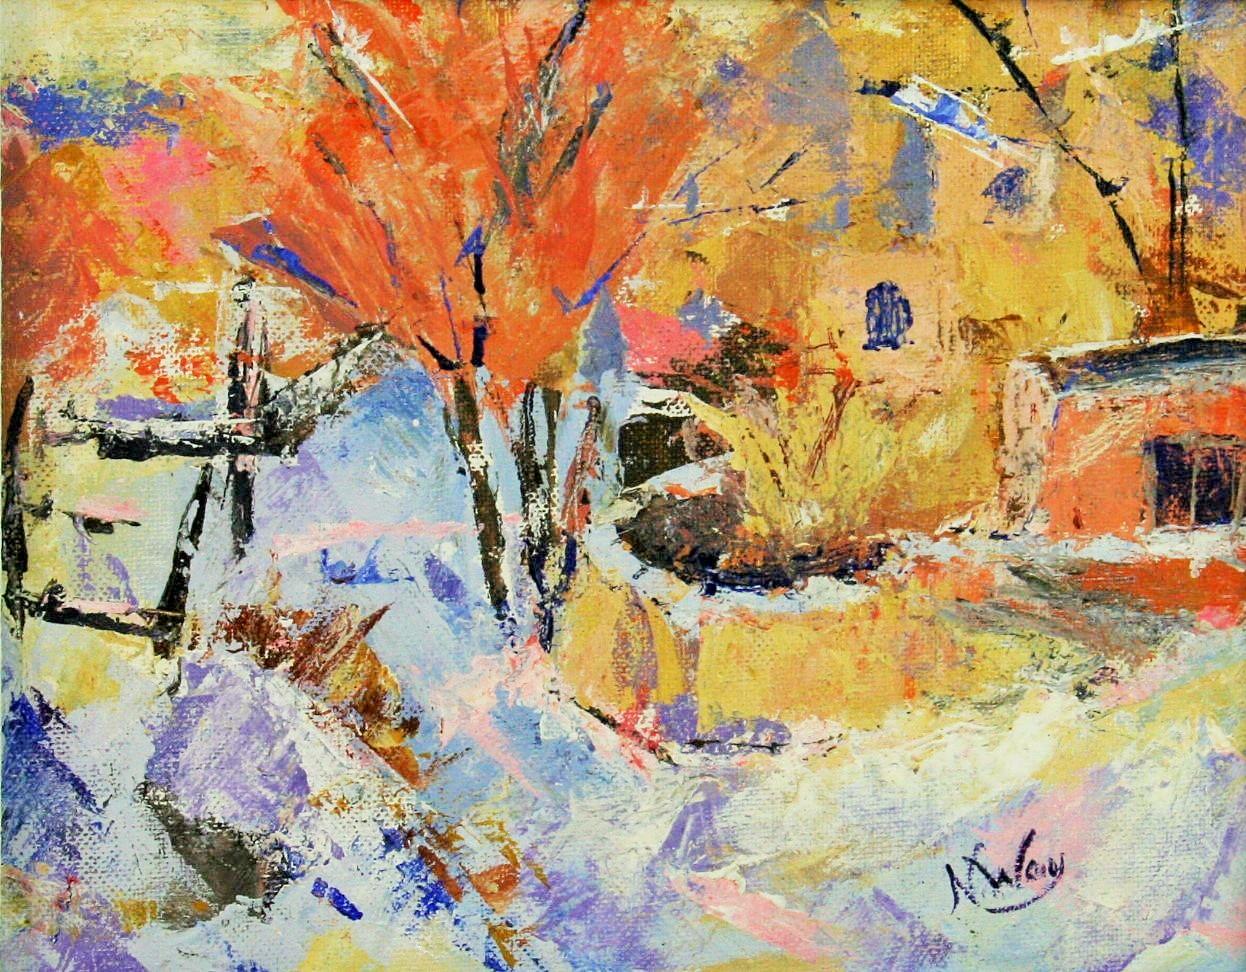 Landscape Painting N.Way - Paysage de village impressionniste français